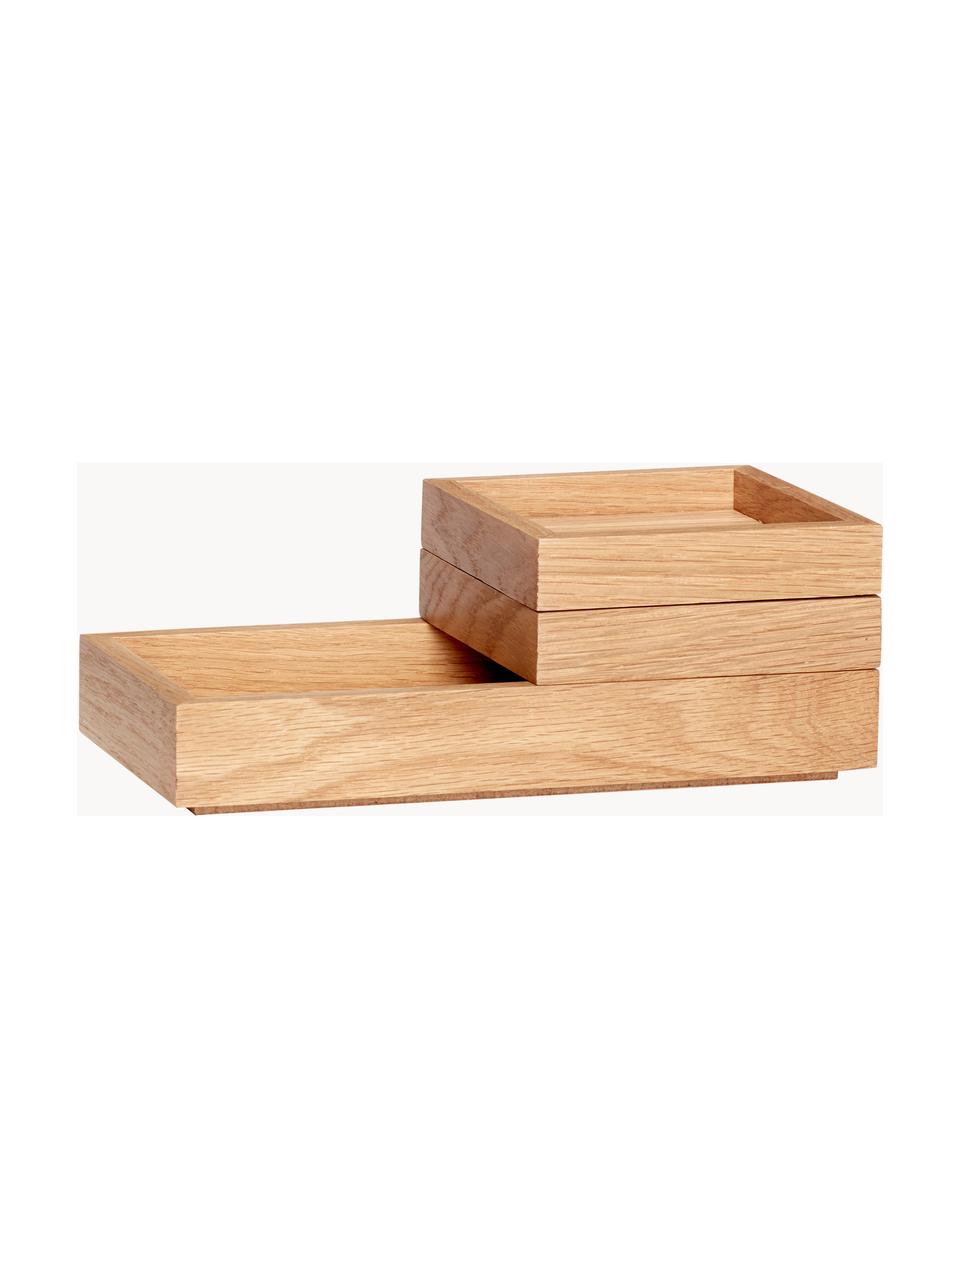 Stapelbare Aufbewahrungsboxen Klara, 3er-Set, Eichenholzfurnier, Eichenholz

Dieses Produkt wird aus nachhaltig gewonnenem, FSC®-zertifiziertem Holz gefertigt., Eichenholz, Set in verschiedenen Größen